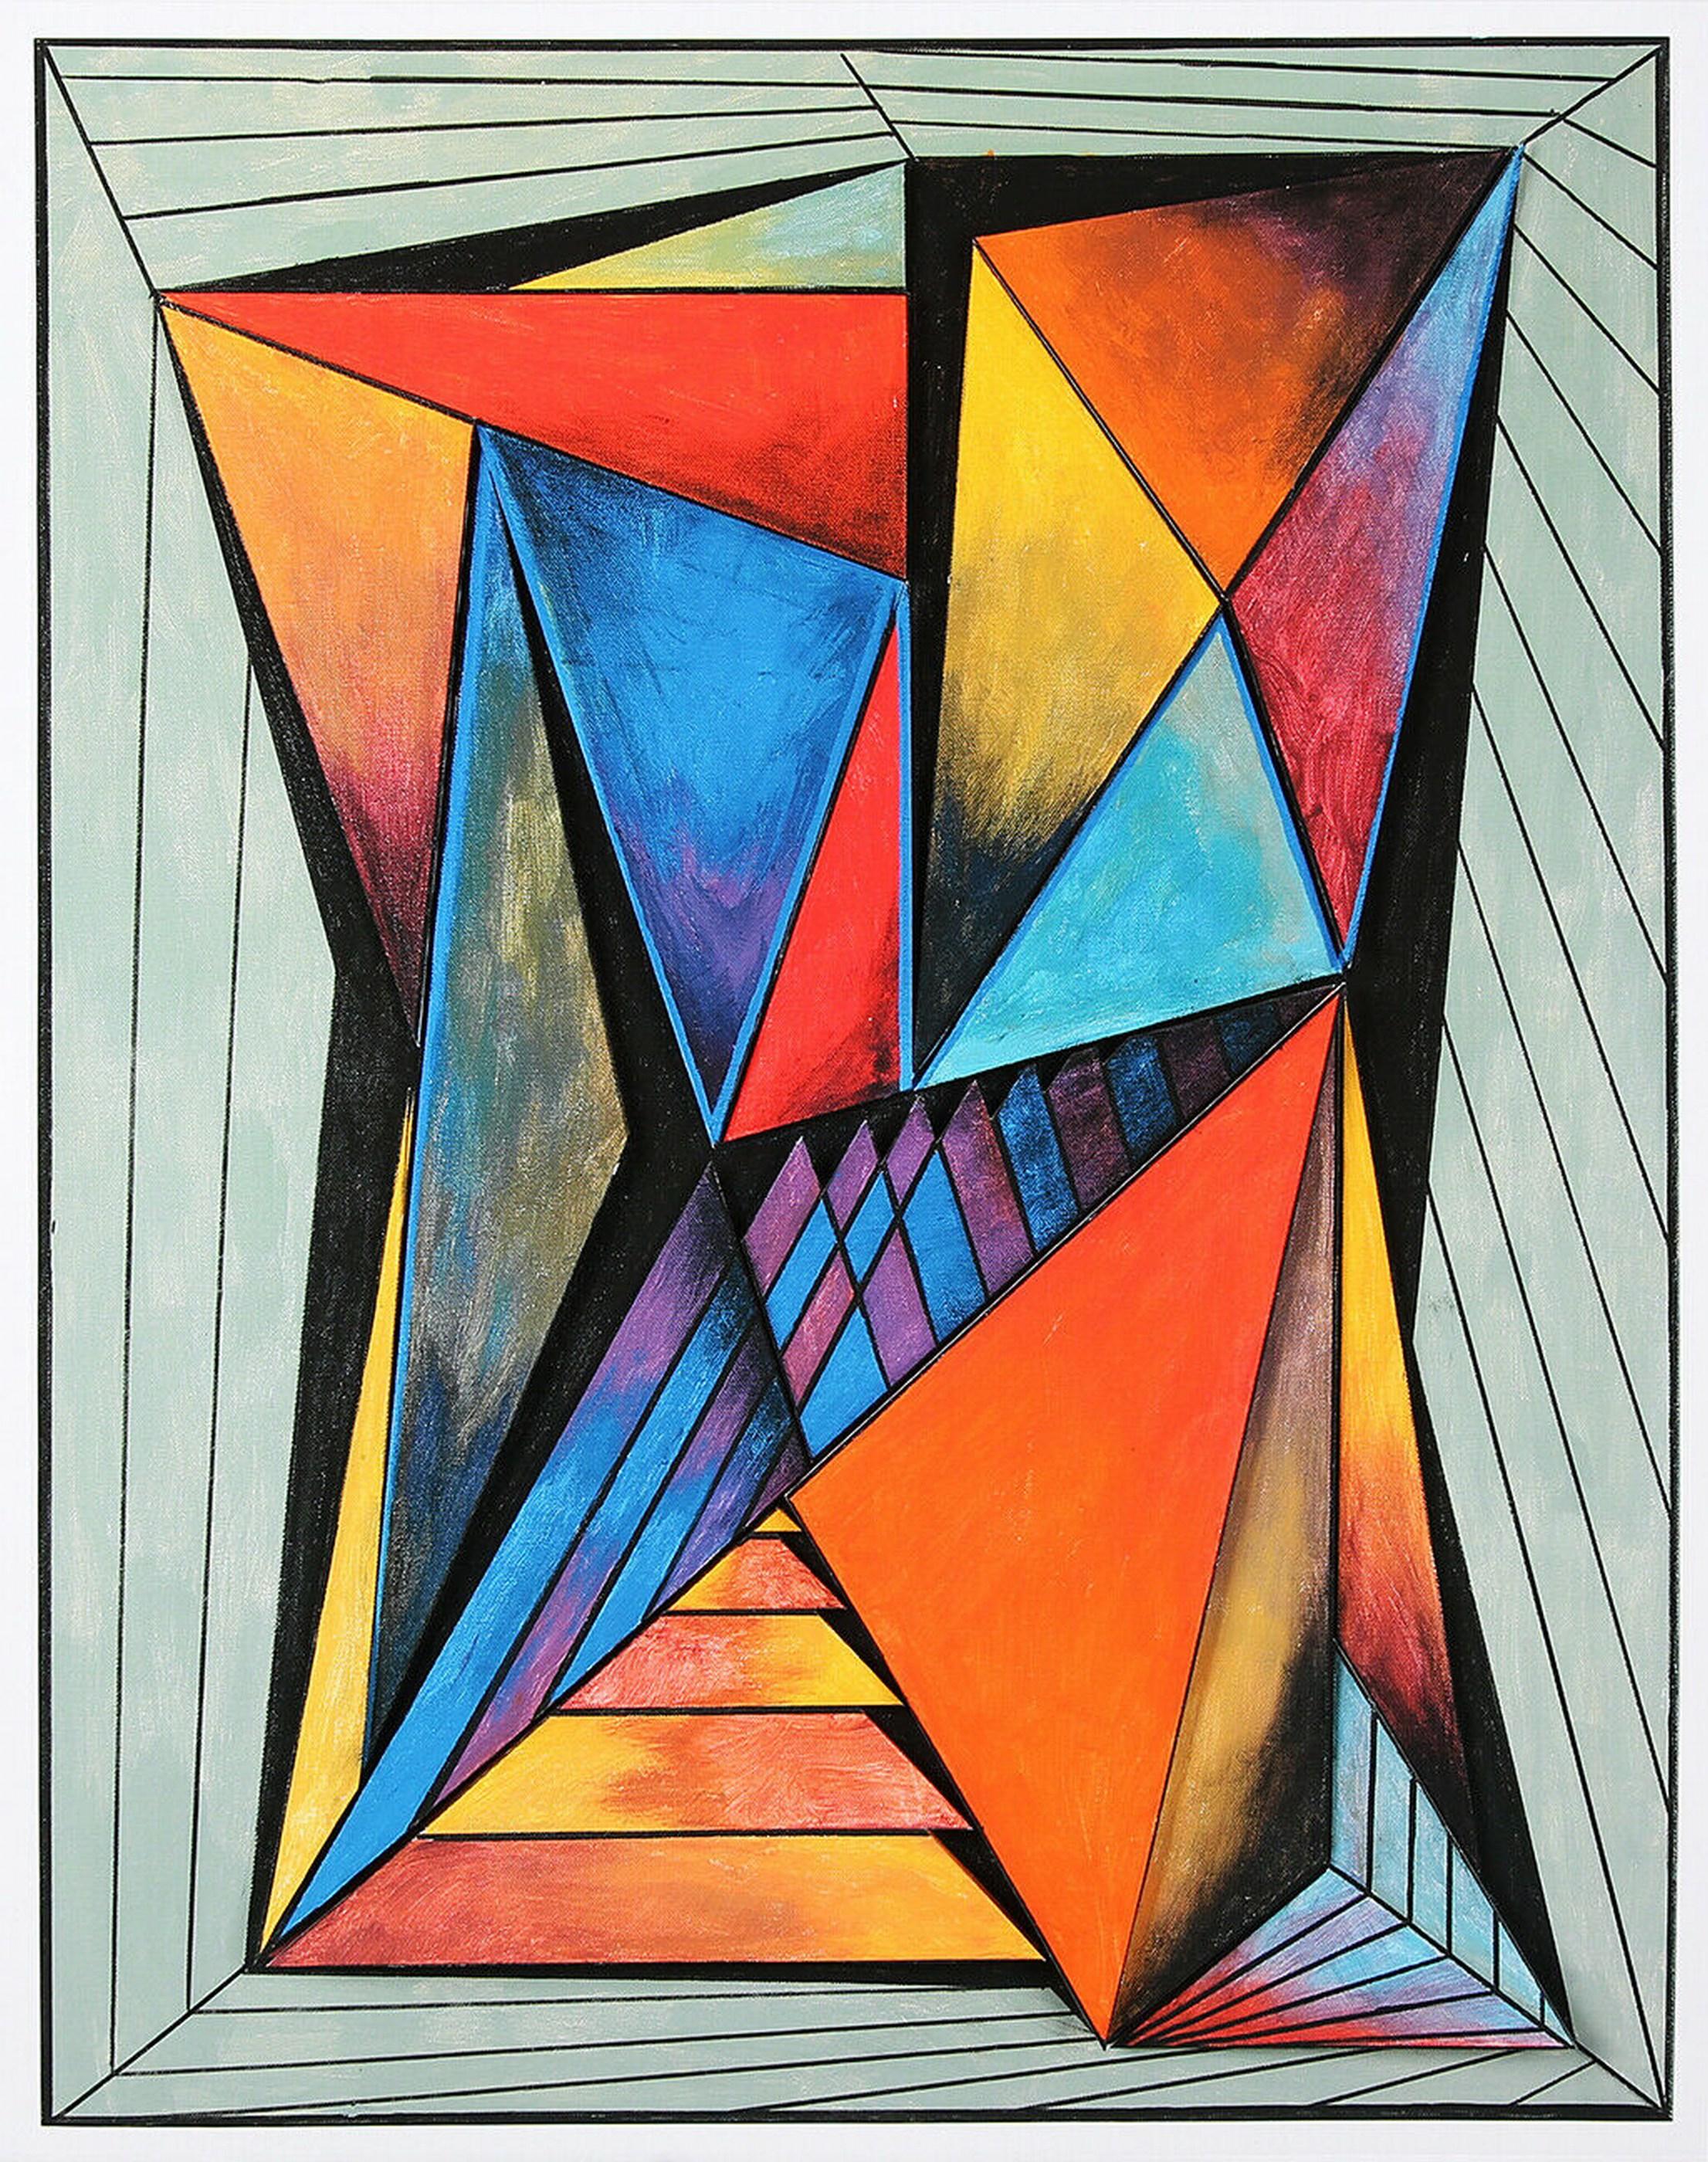 Geometrische Komposition #4 (3D-Konstruktion, Op Art, Lyonel Feininger)